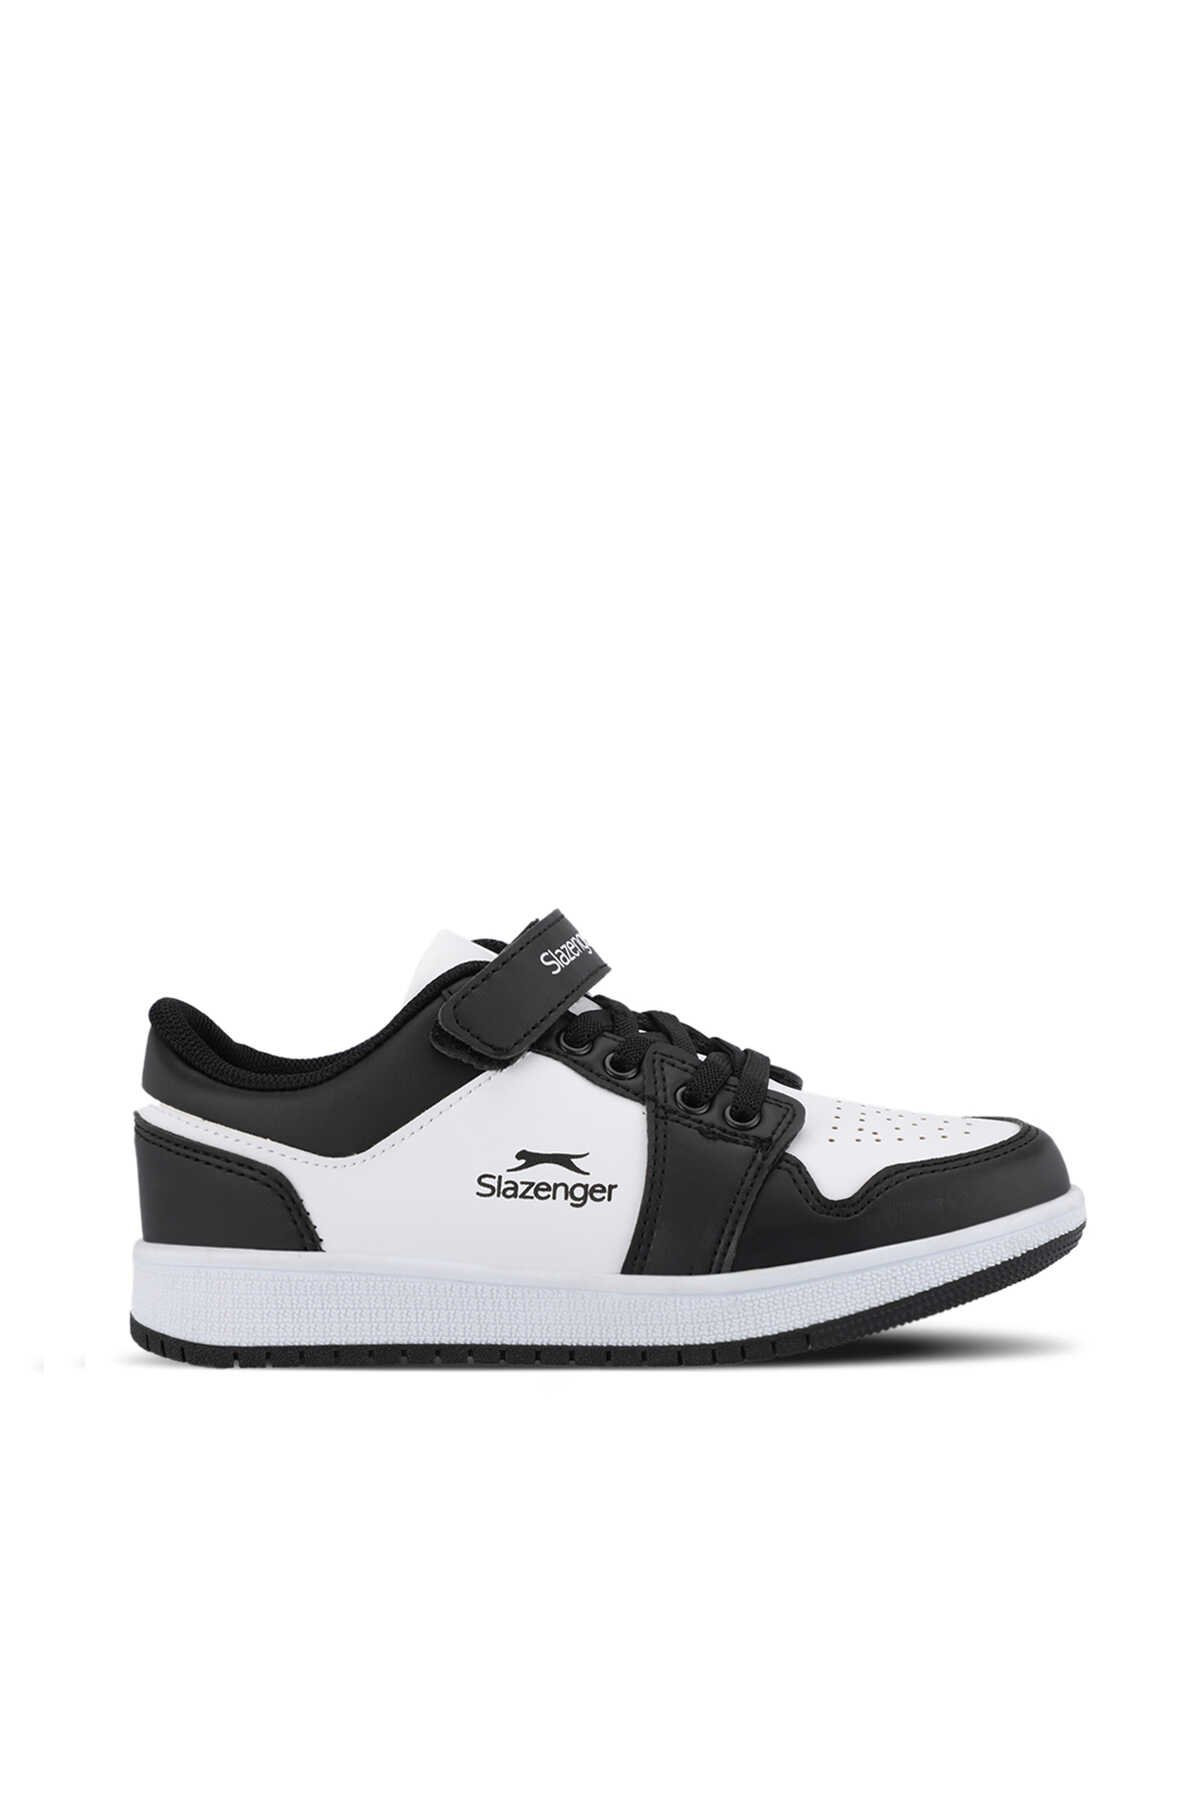 Slazenger - Slazenger PRINCE I Unisex Çocuk Sneaker Ayakkabı Beyaz / Siyah